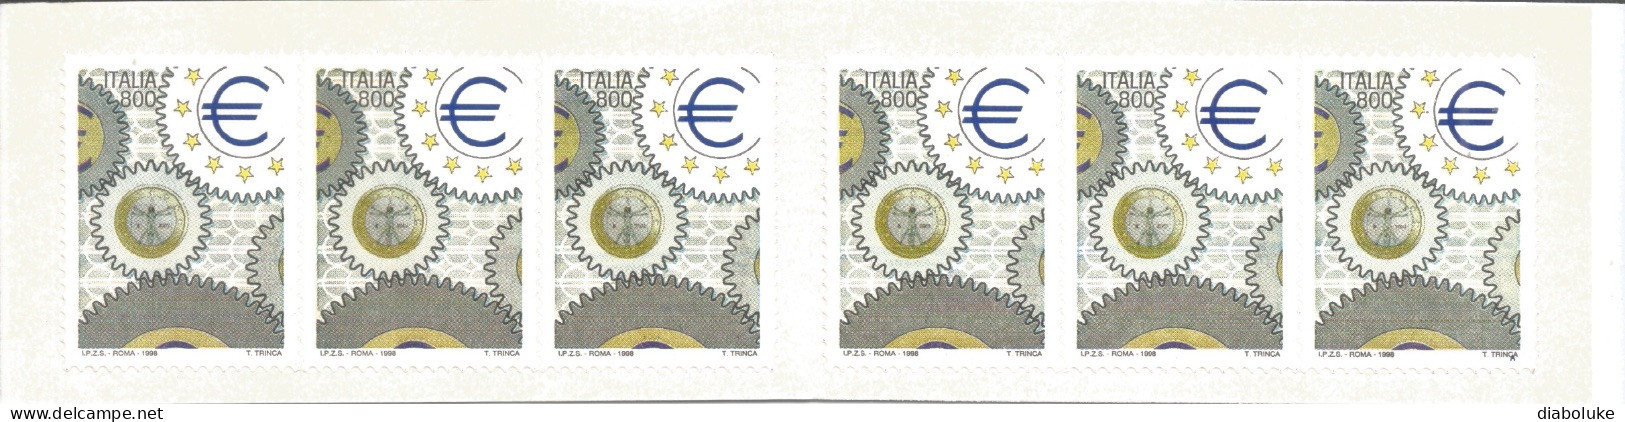 (REPUBBLICA ITALIANA) 1998, GIORNATA DELL'EUROPA - Libretto Nuovo - Carnets